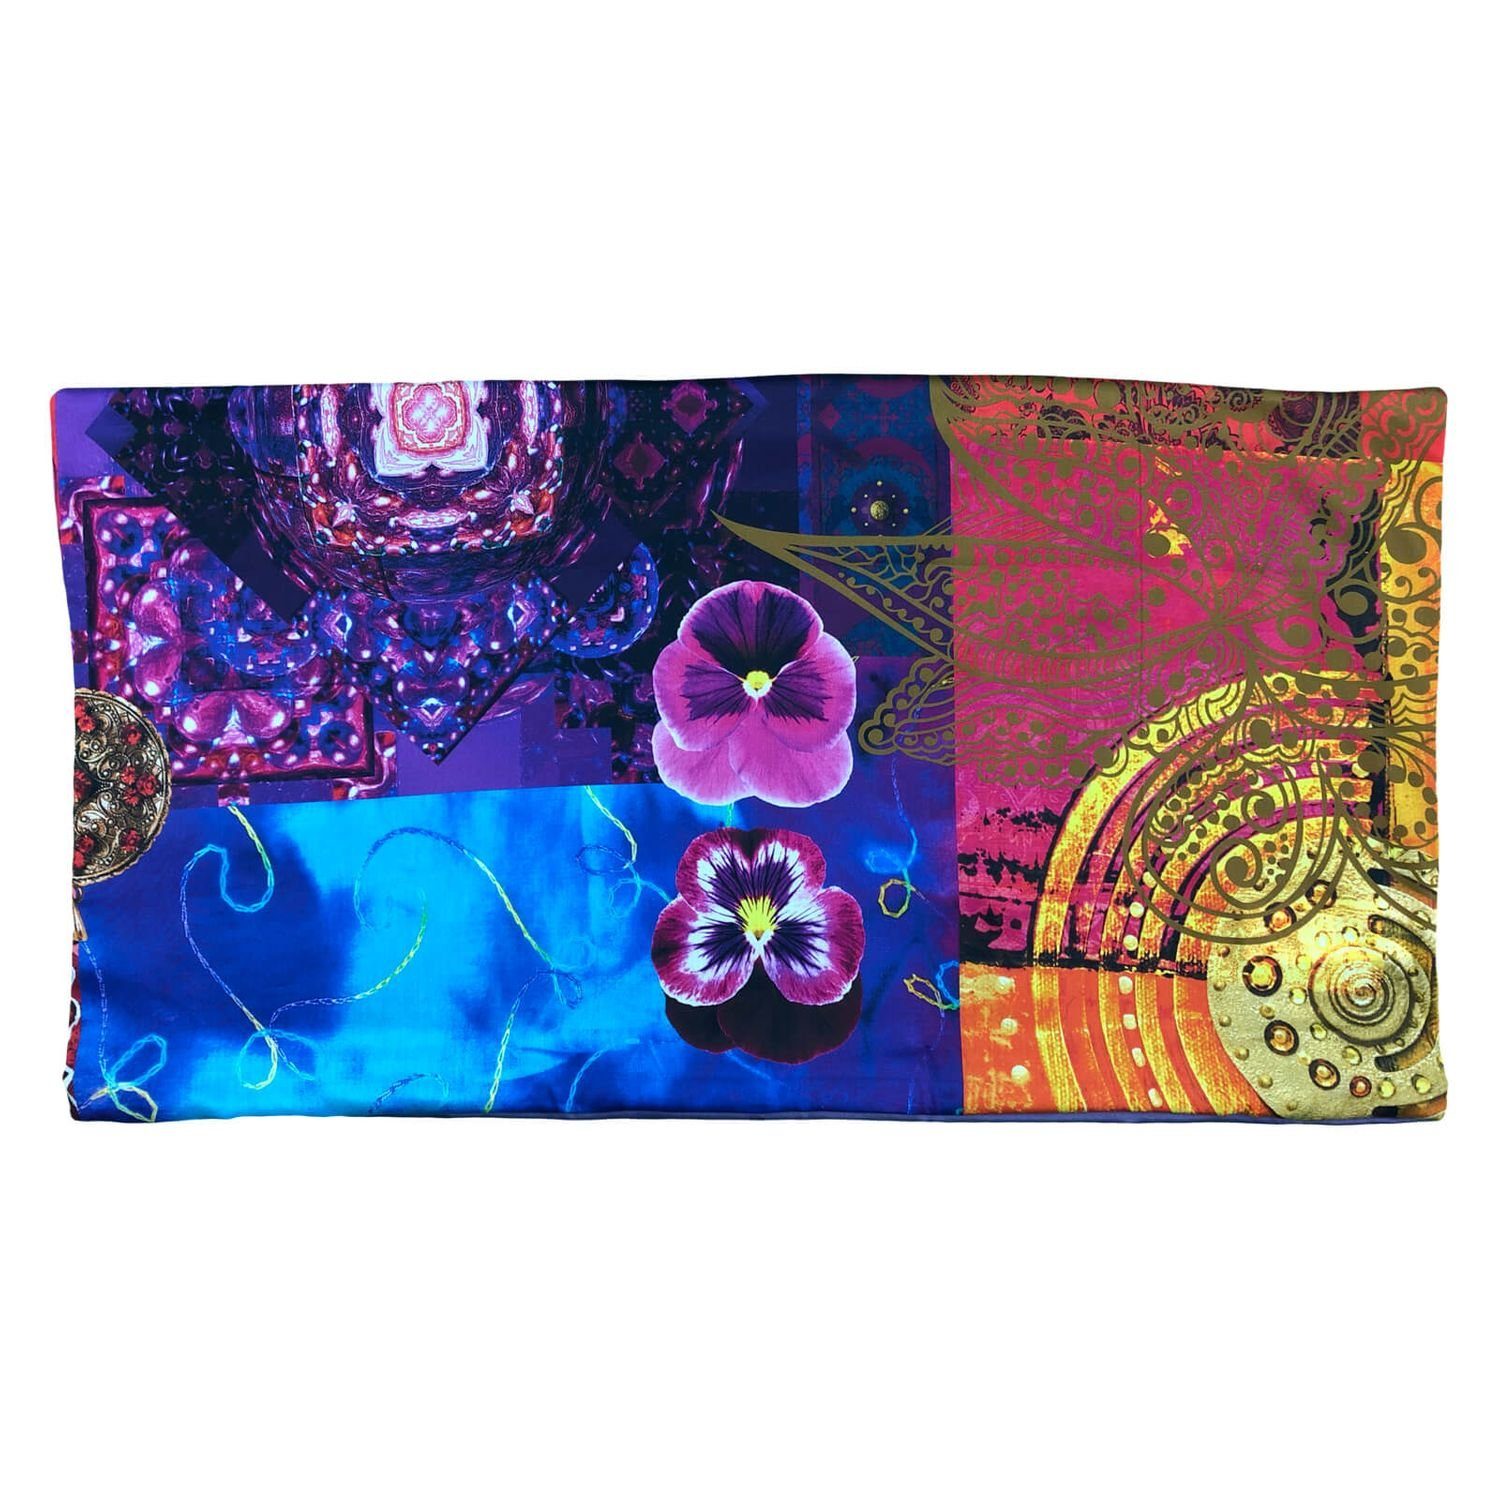 Bettwäsche Zusatzkissenbezug Delhi purple 40x80 cm, Essenza, Satin, 1 teilig, Mandala, orientalische Muster, Blumen